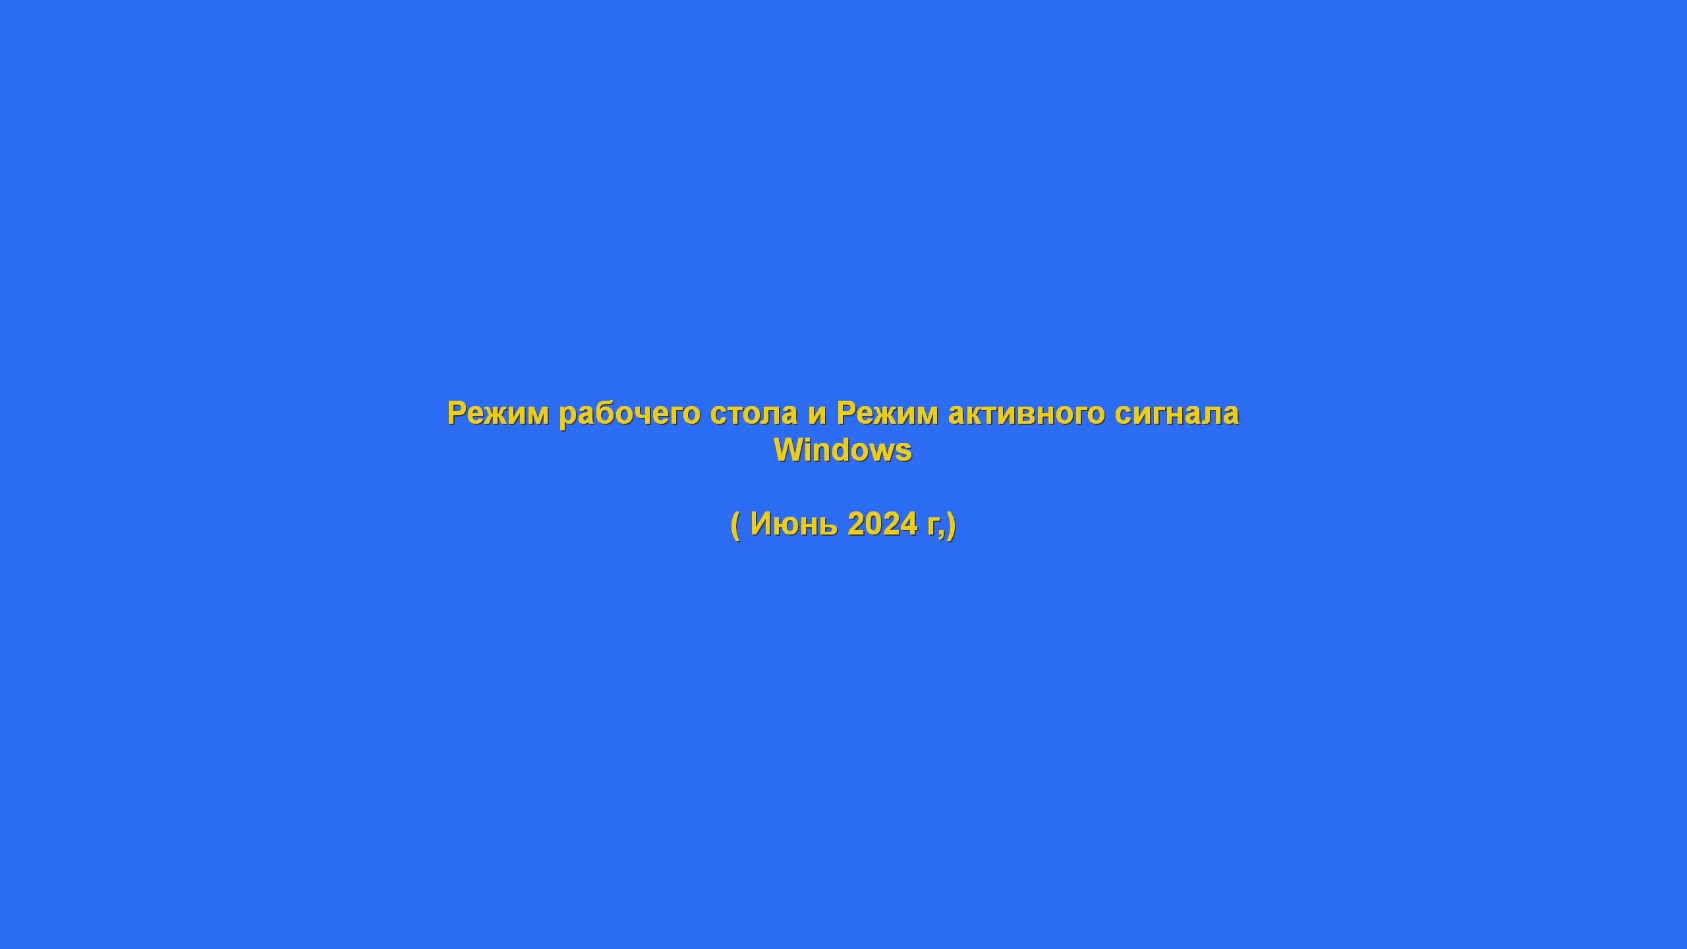 Режим рабочего стола и Режим активного сигнала (Windows)